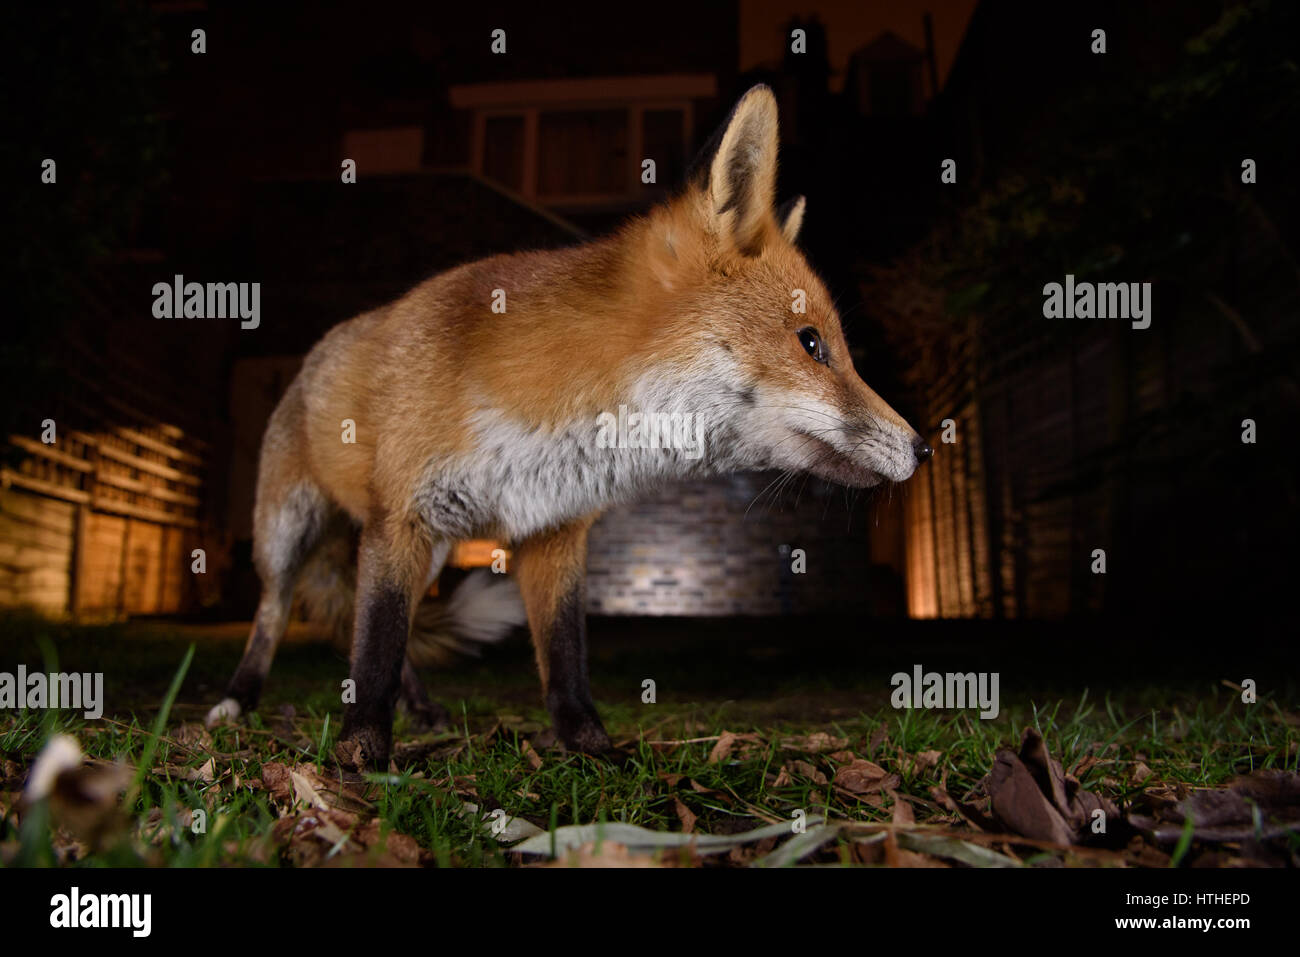 Fox merodea por alimentos en un jardín de Londres de noche Foto de stock